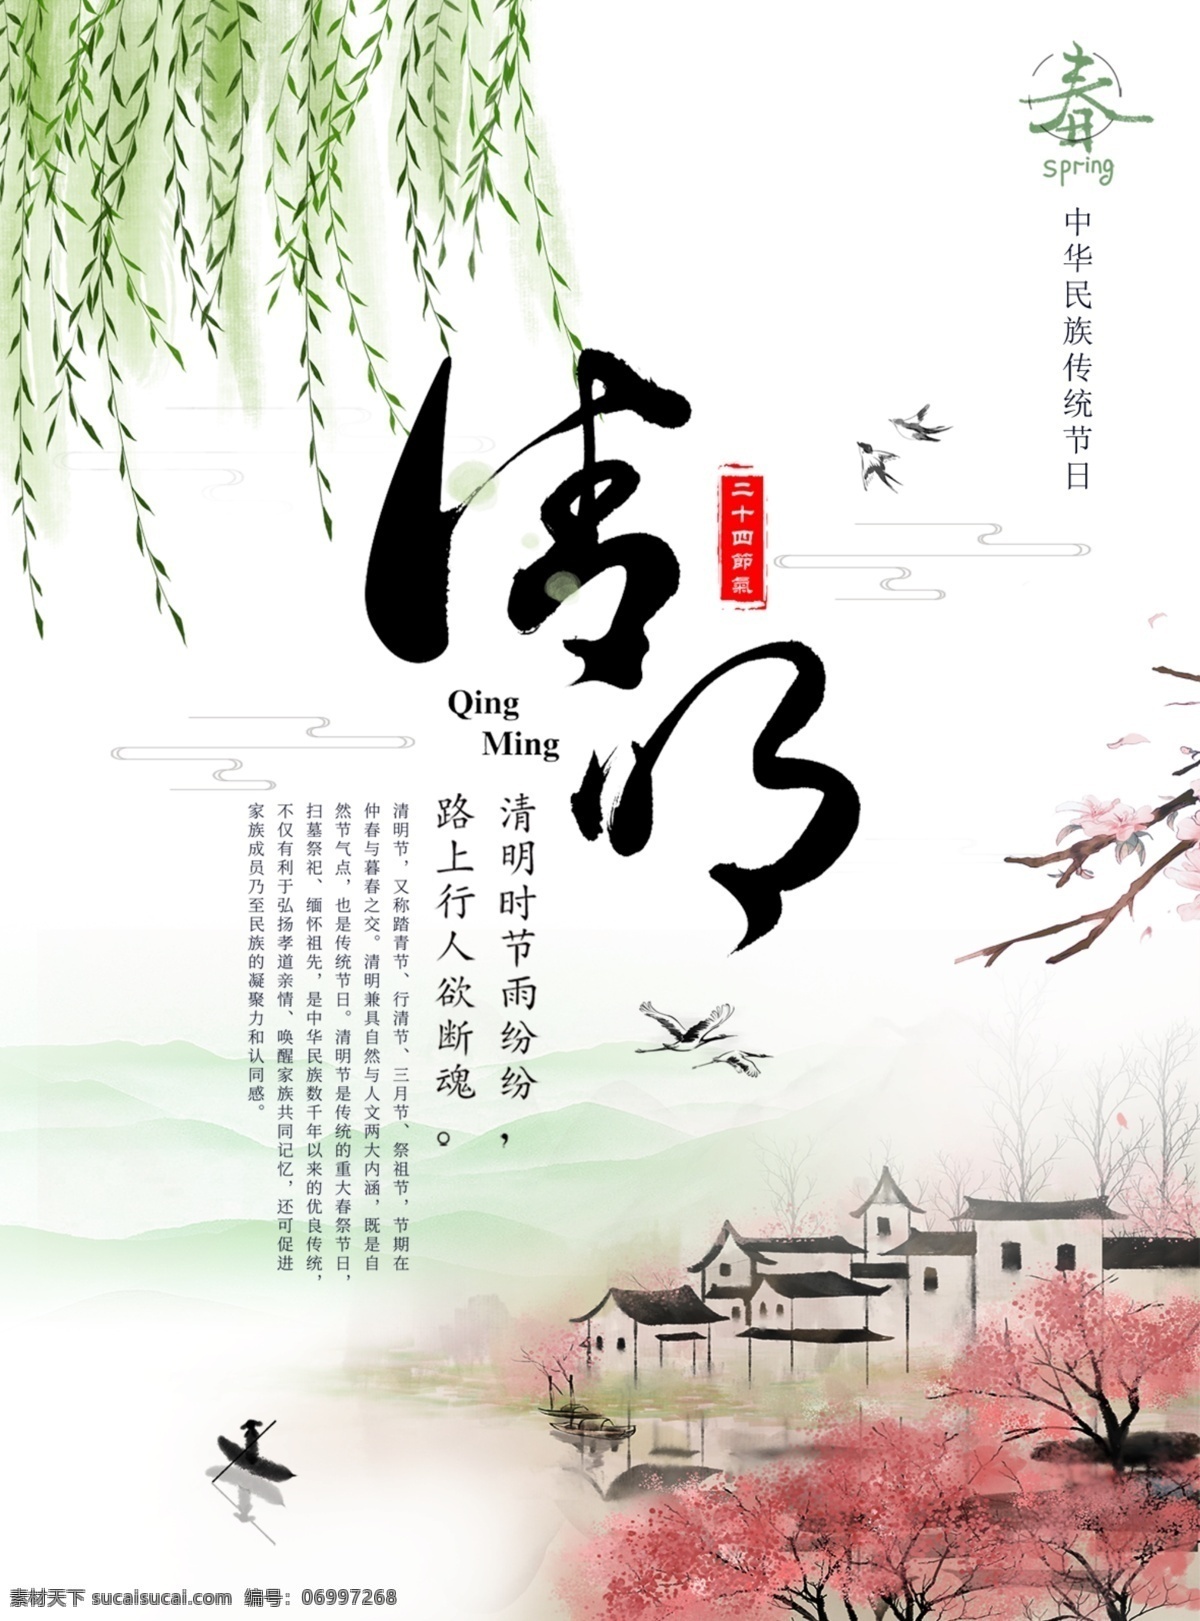 清明节 节气 海报 品 桃花 山水 水墨 杨柳 文化艺术 节日庆祝